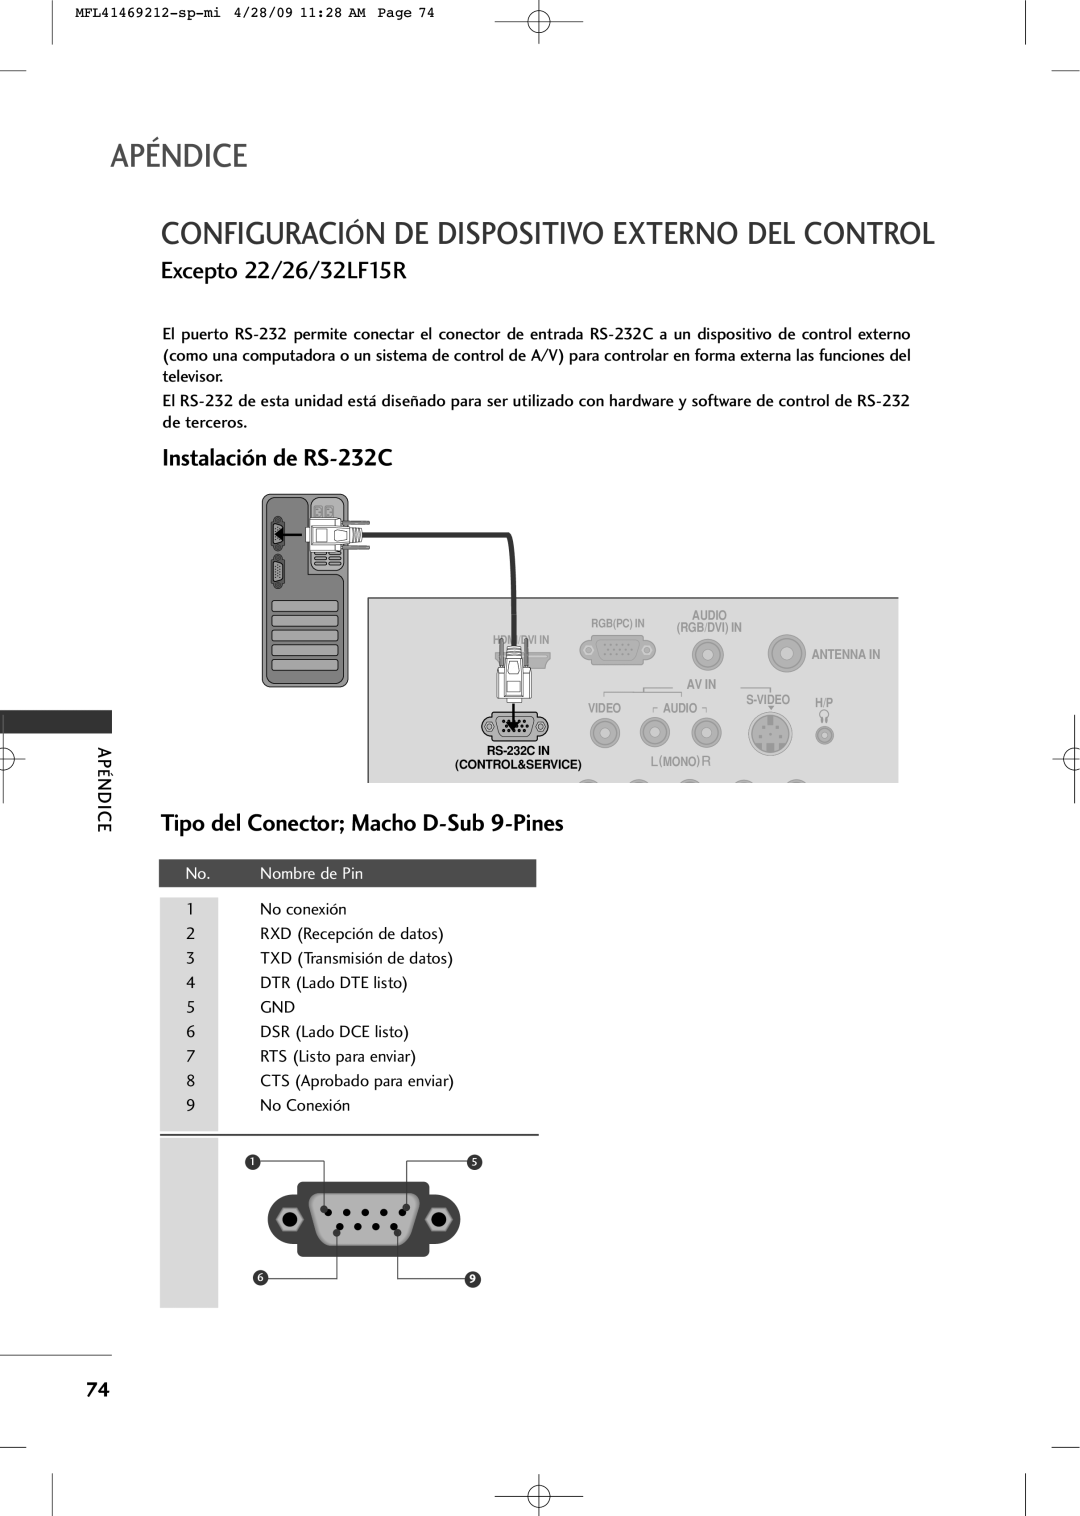 LG Electronics 2230R-MA Configuración De Dispositivo Externo Del Control, Excepto 22/26/32LF15R, Instalación de RS-232C 